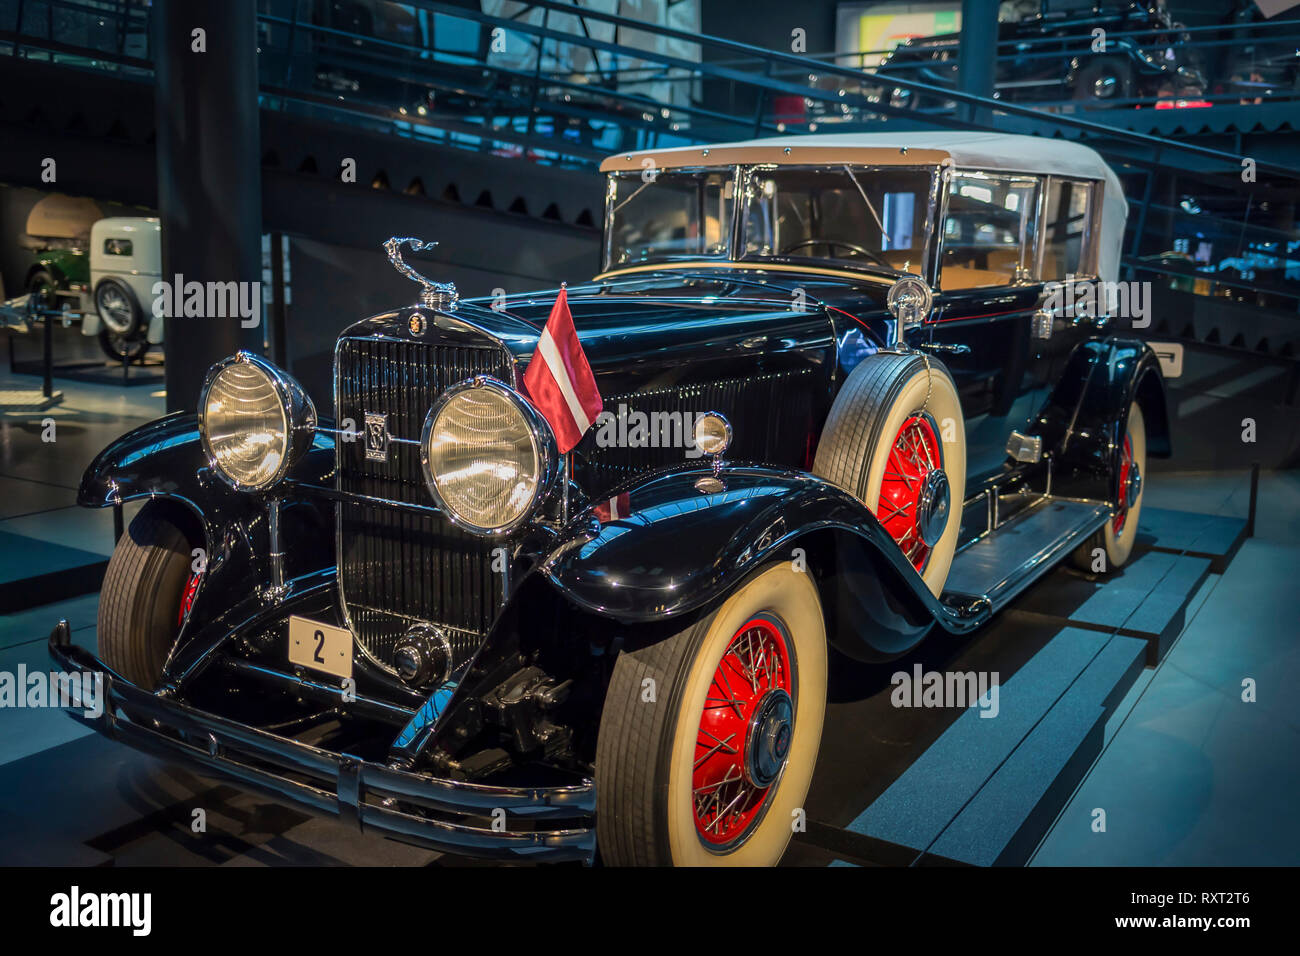 RIGA, LATVIA-February 18, 2019: 1930 Cadillac in the Riga Motor Museum Stock Photo